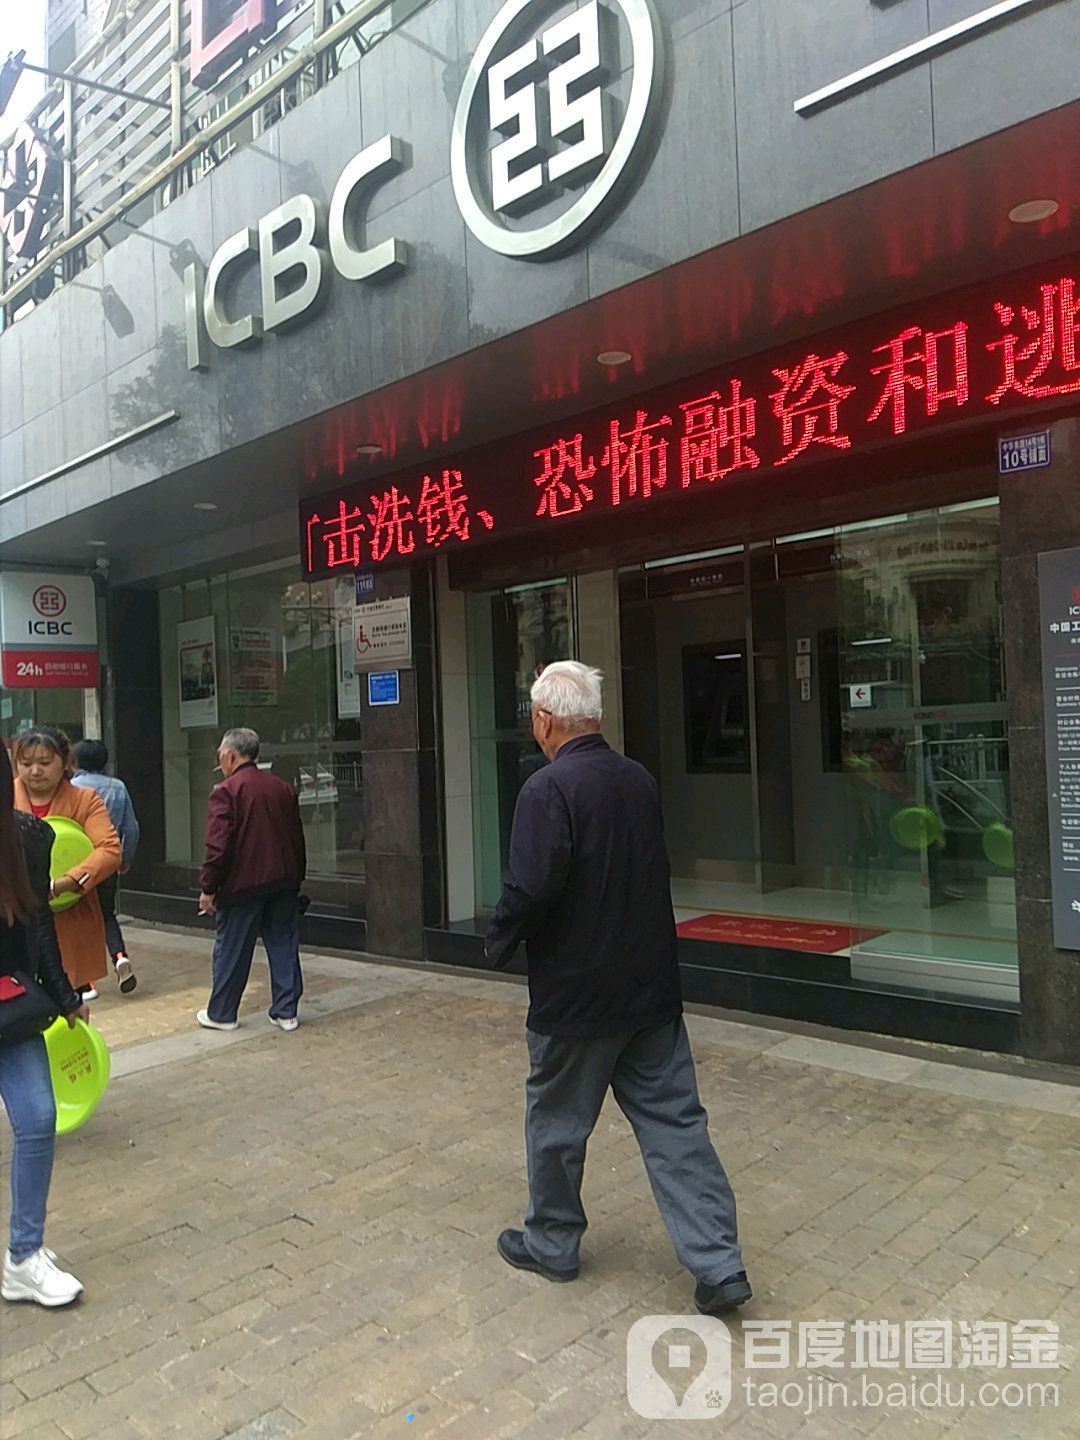 中國工商銀行24小時自助銀行(南街分理處)